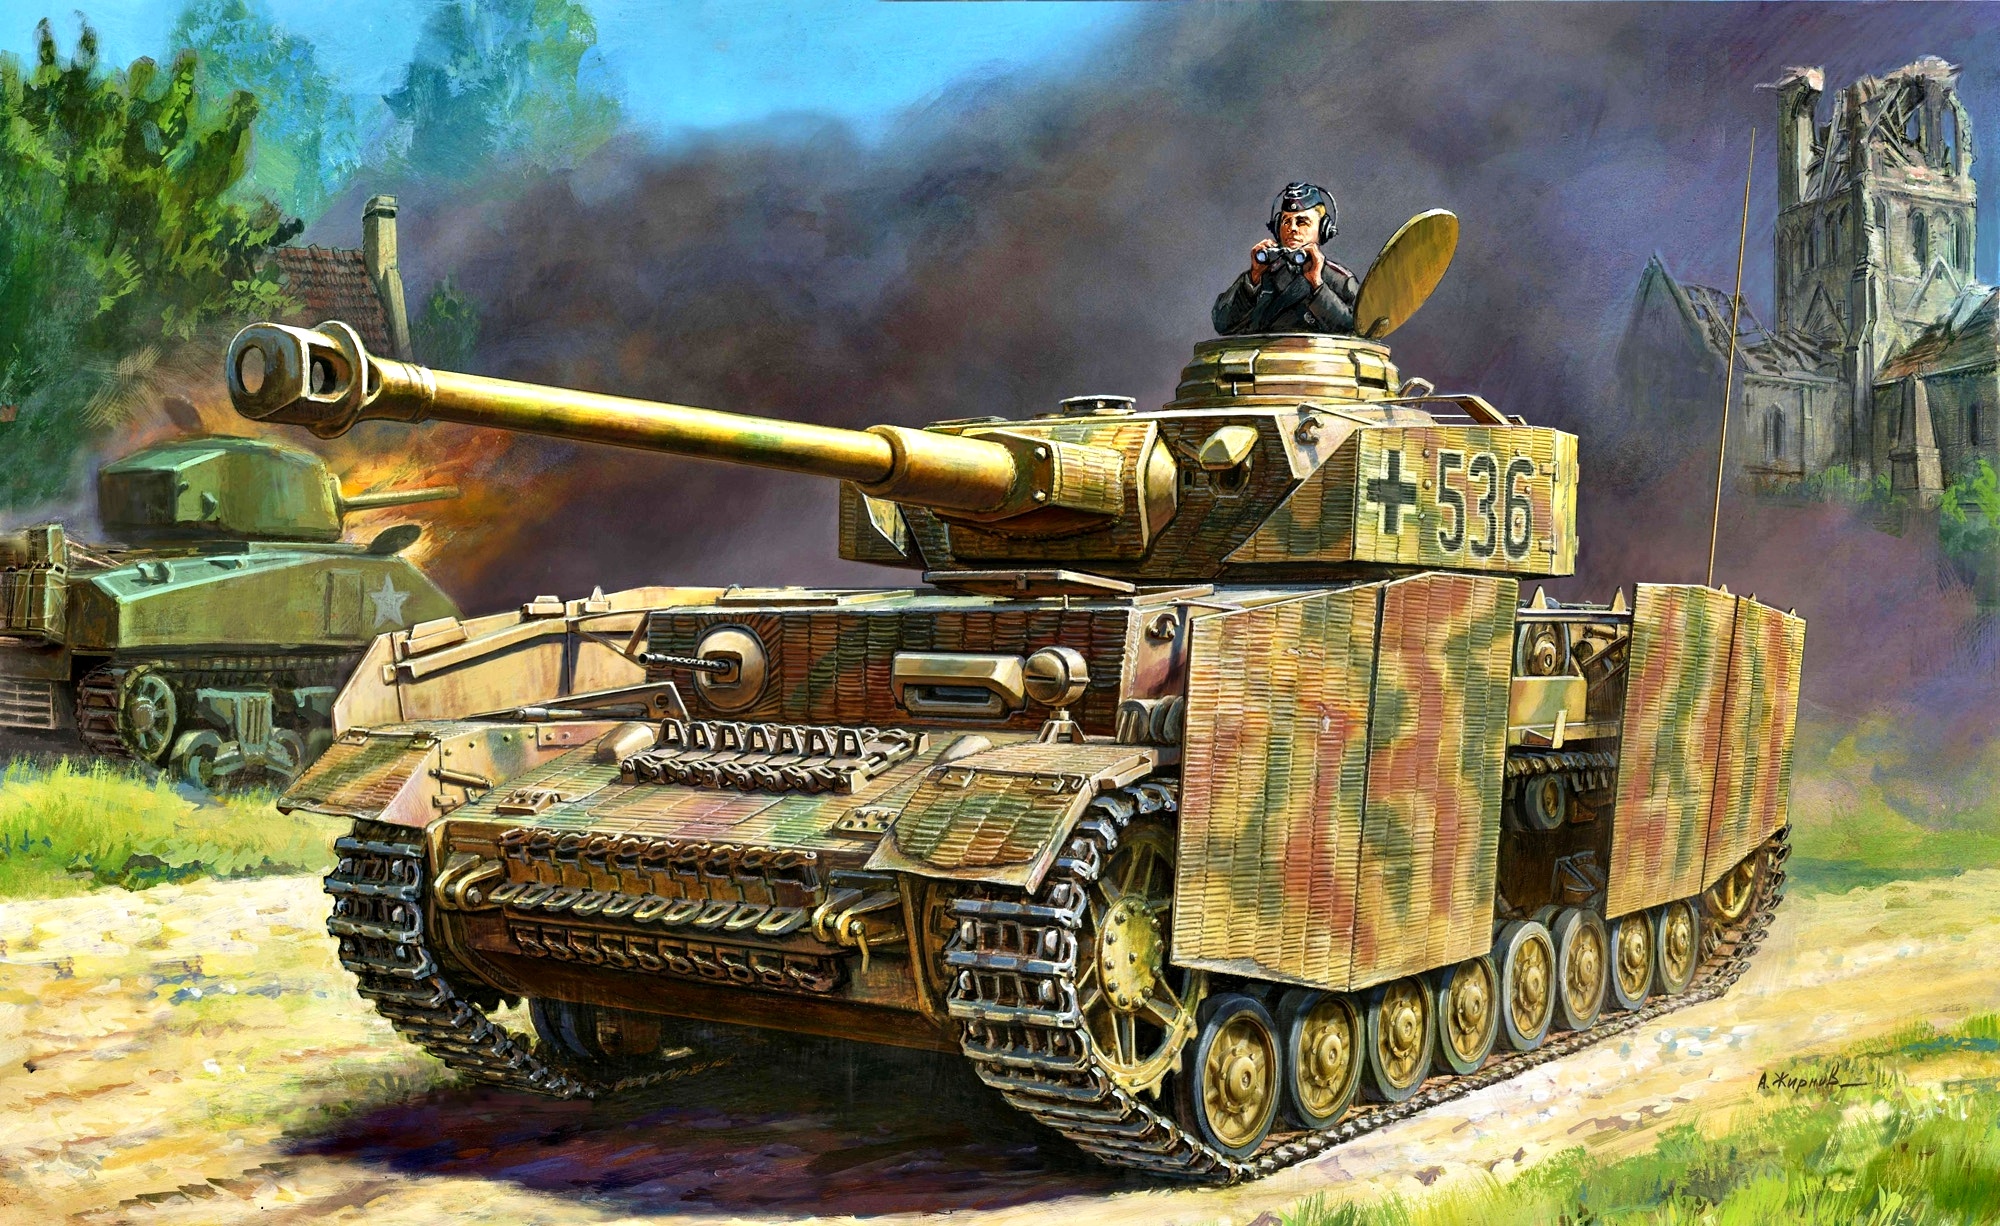 Немецкий средний танк. Танк Panzer 4 Ausf.h. Сборная модель zvezda немецкий средний танк t-IV (H) (3620) 1:35. PZ 4 Ausf h звезда. Немецкий танк PZ 4.